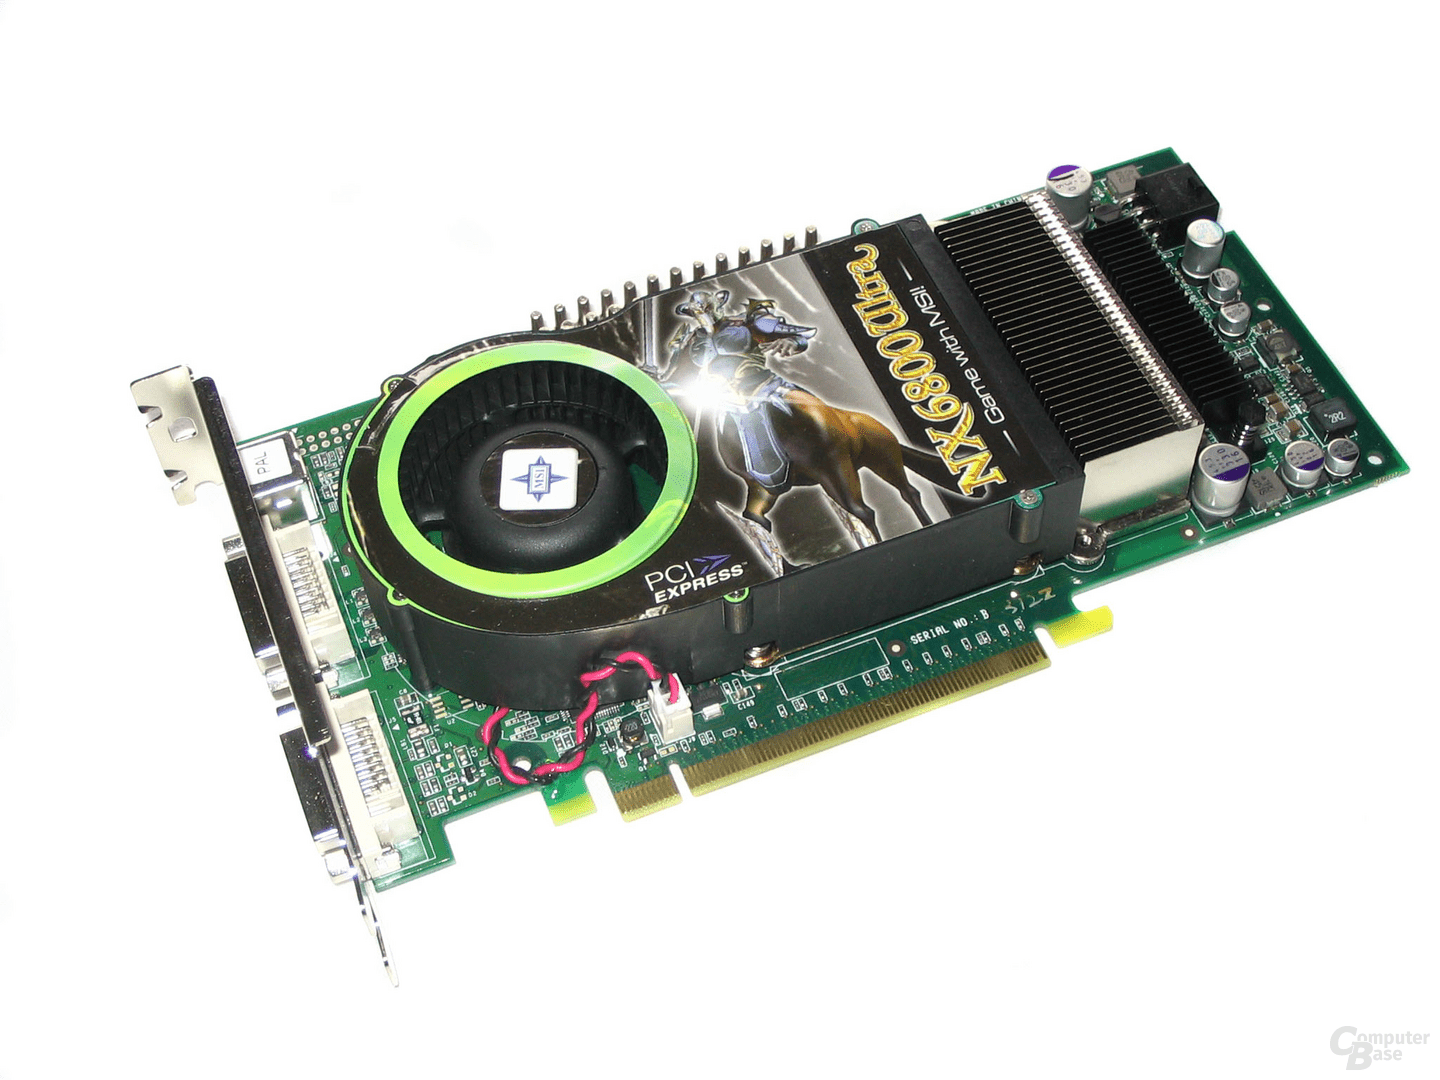 MSI GeForce 6800 Ultra